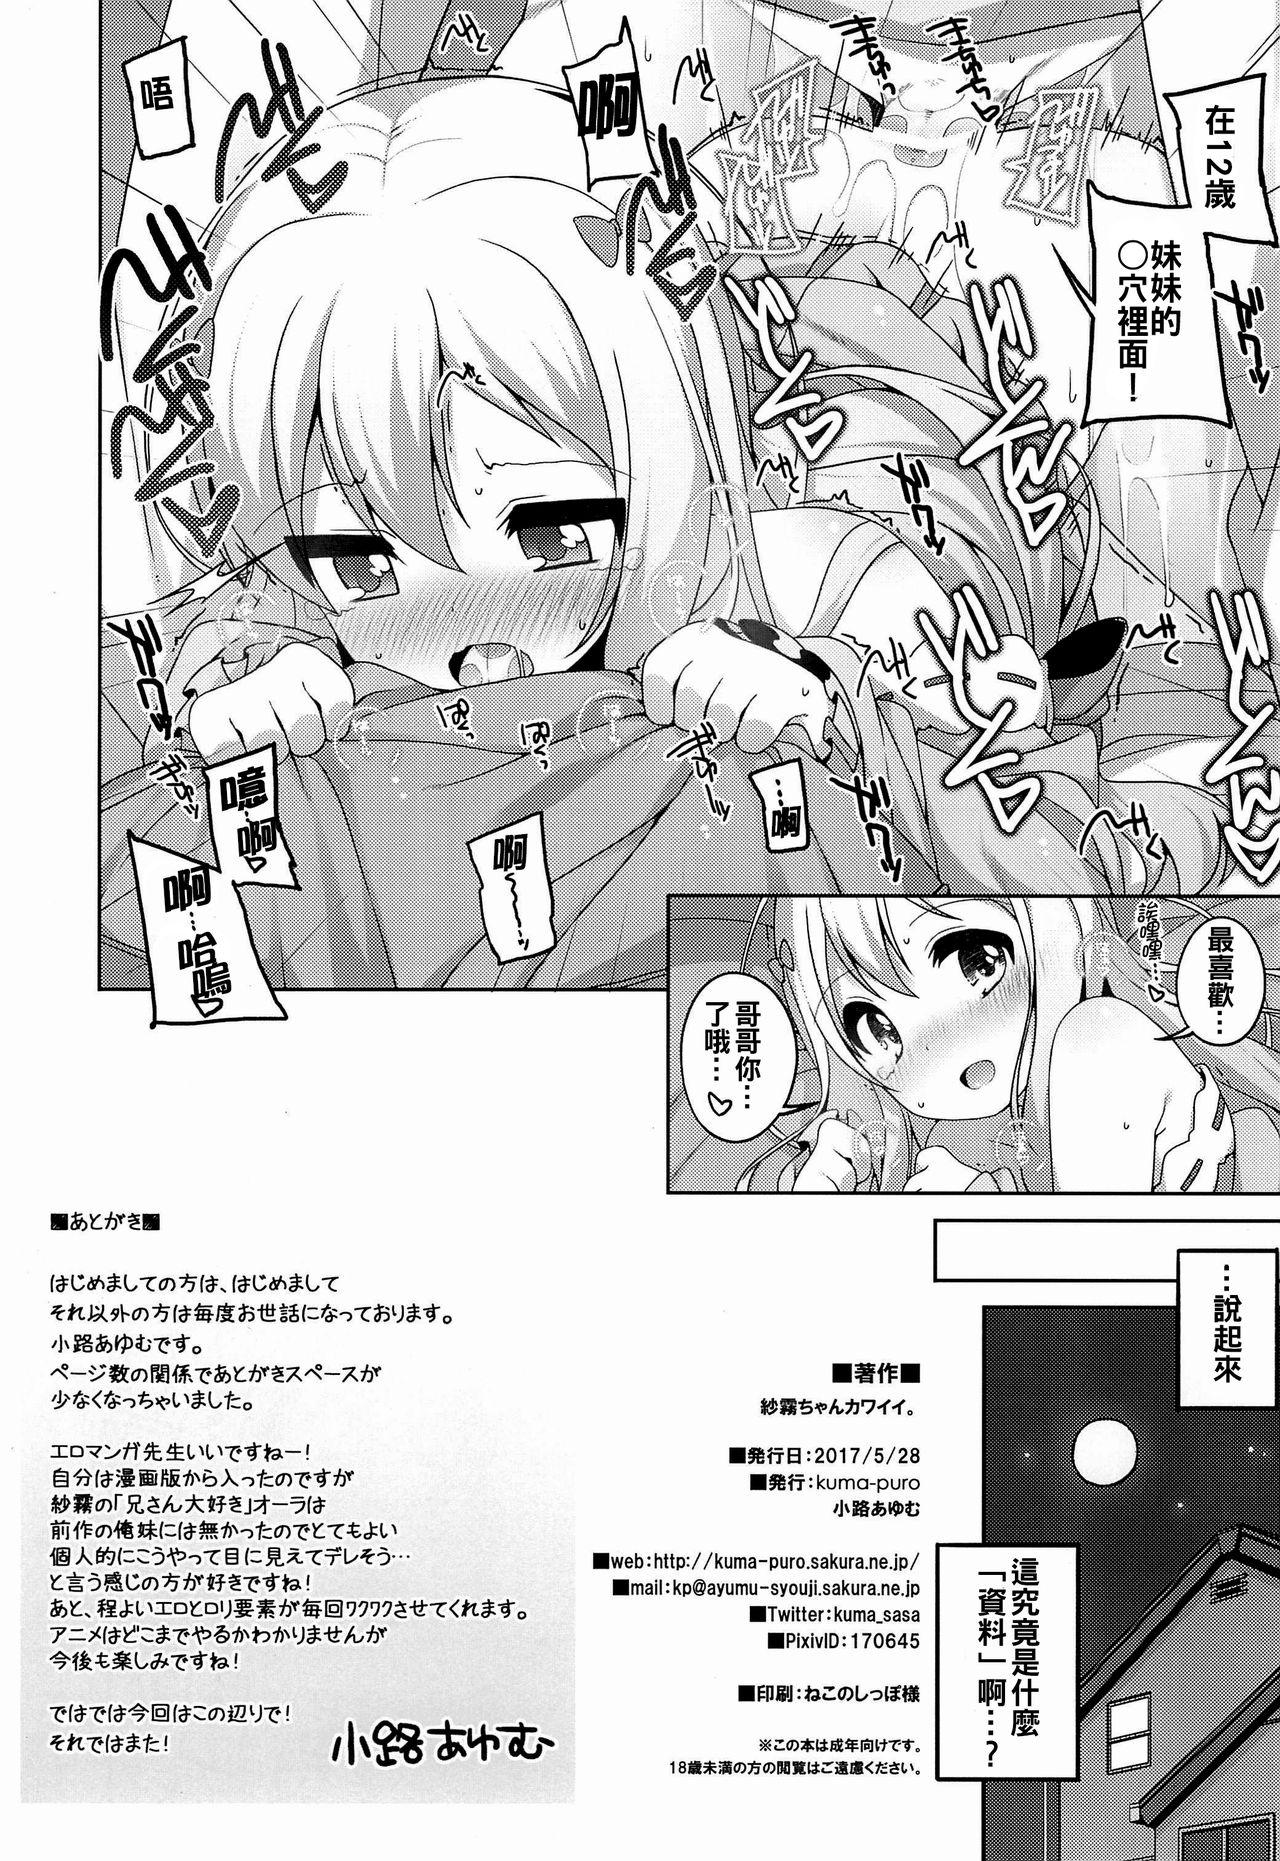 Pervs Sagiri-chan Kawaii. - Eromanga sensei Gang - Page 11